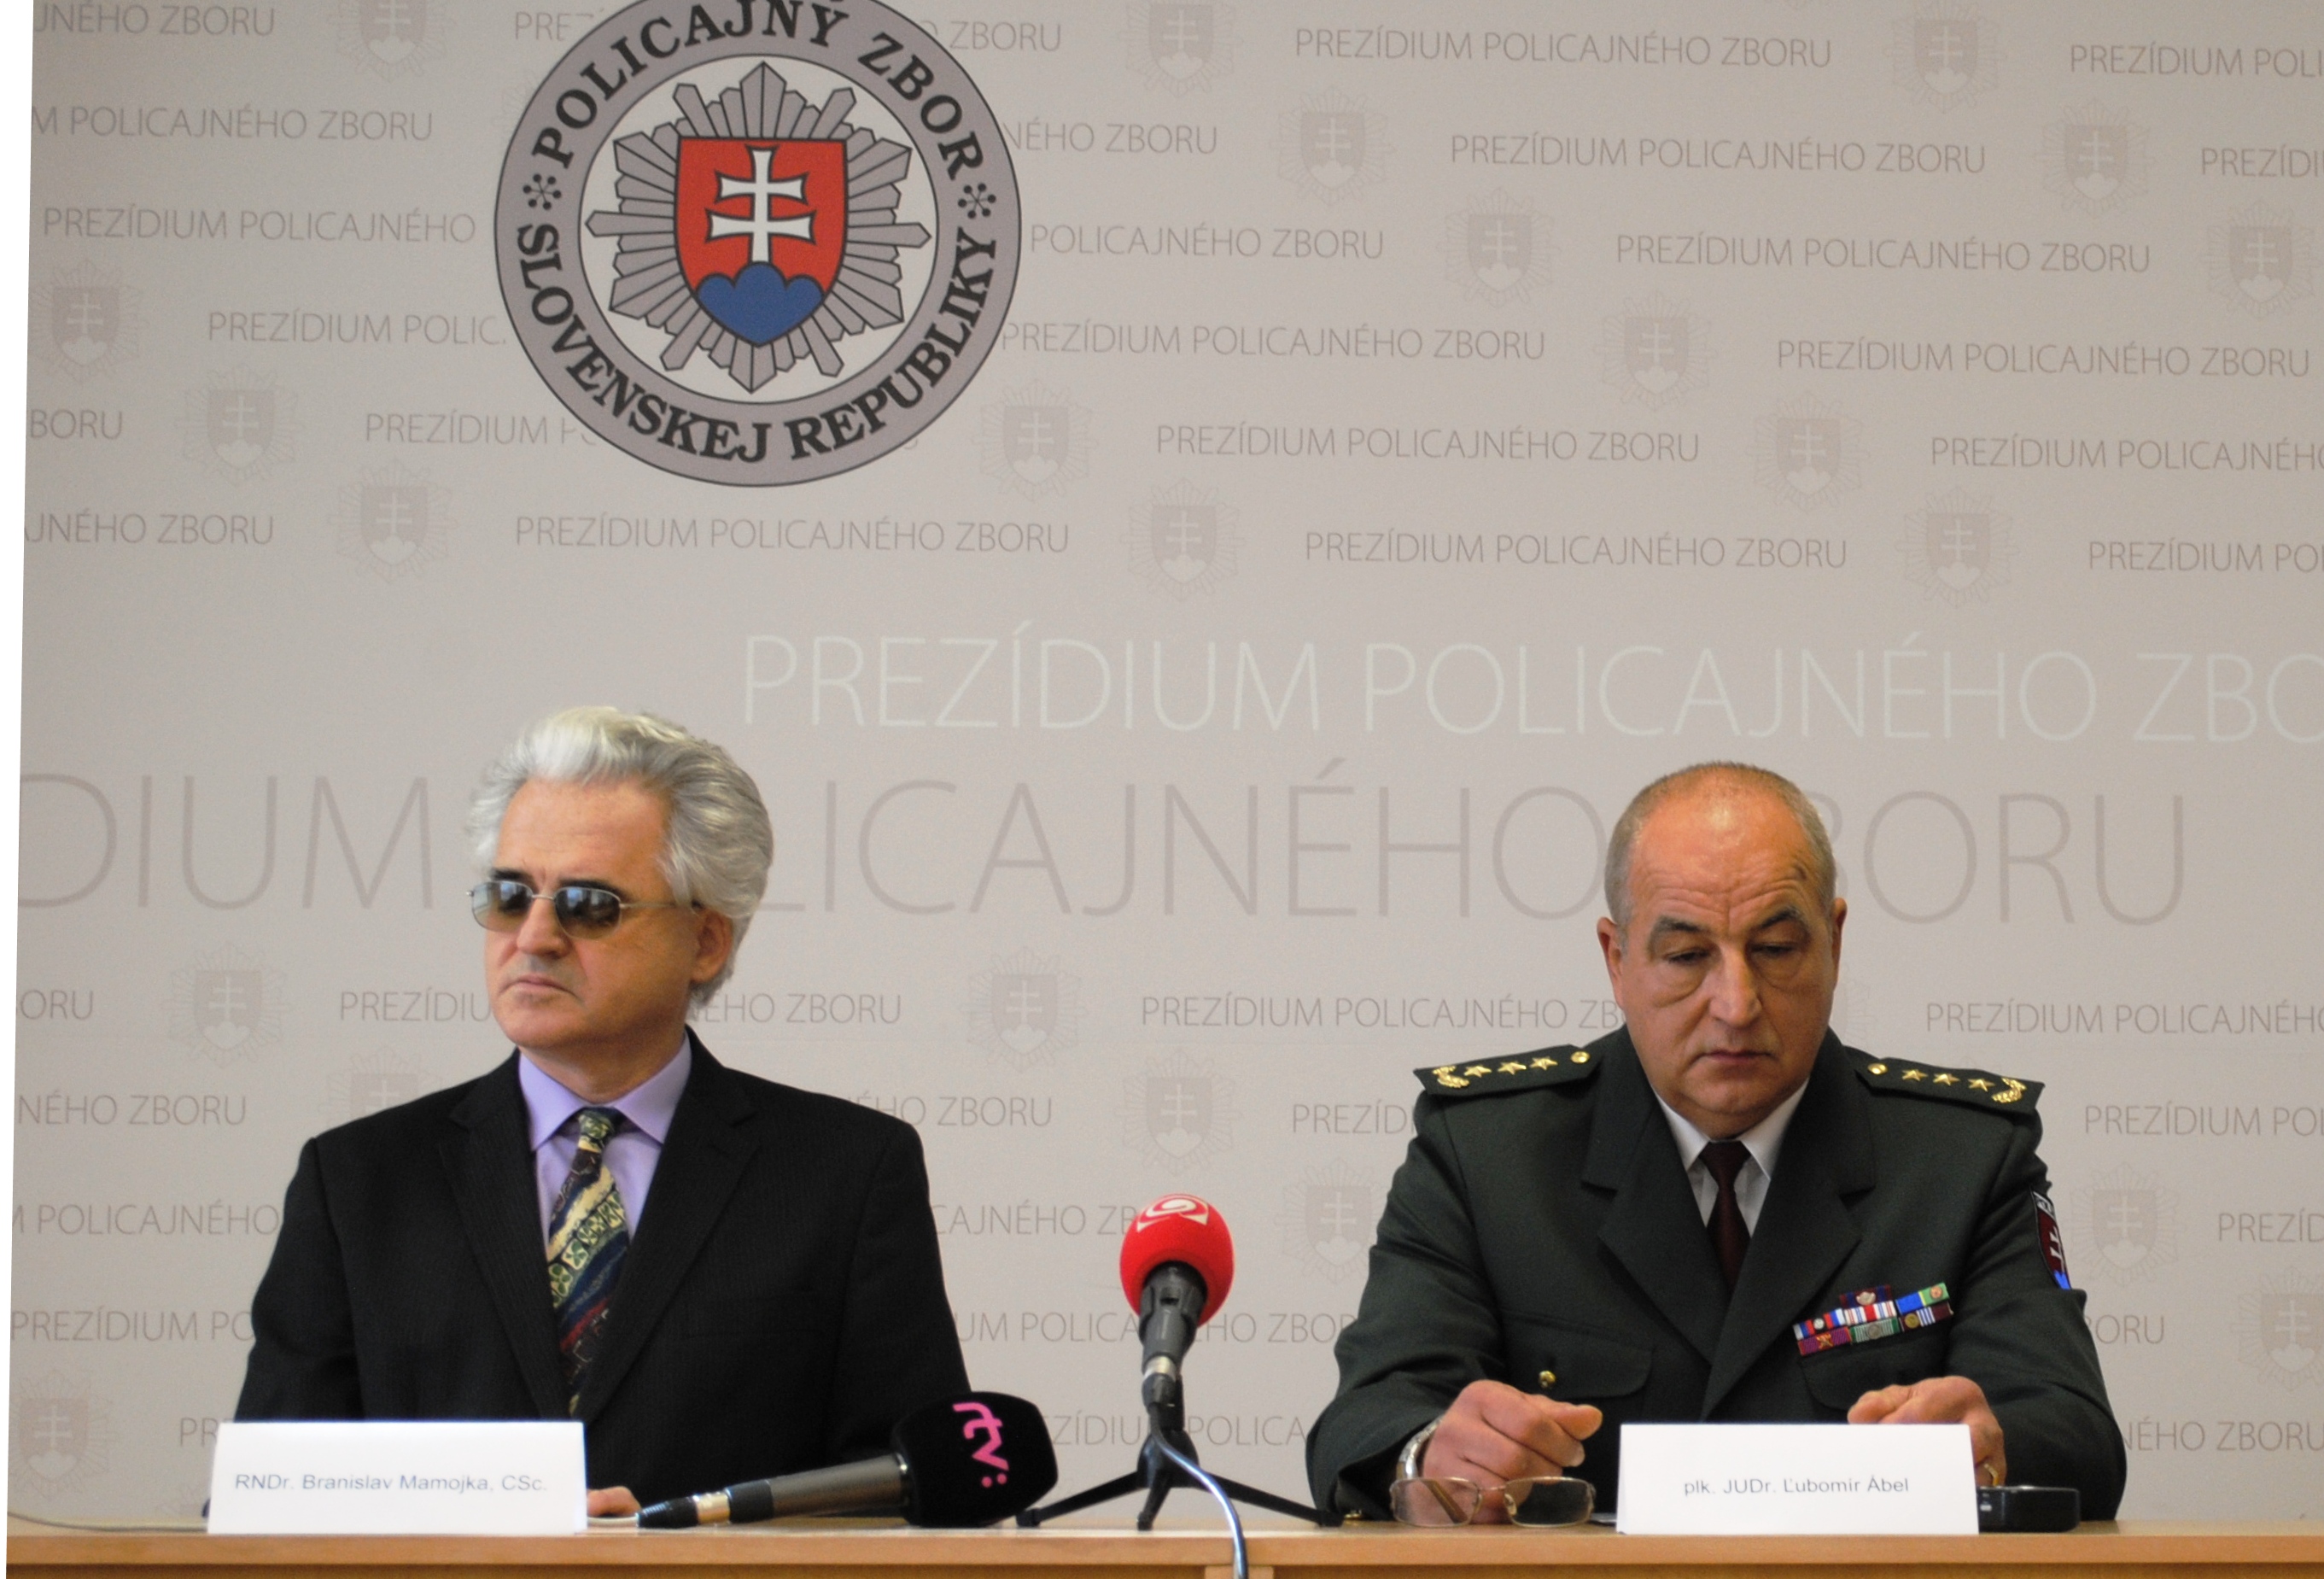 Predseda únie nevidiacich a slabozrakých pán Mamojka s viceprezidentom PZ Ľubomírom Ábelom